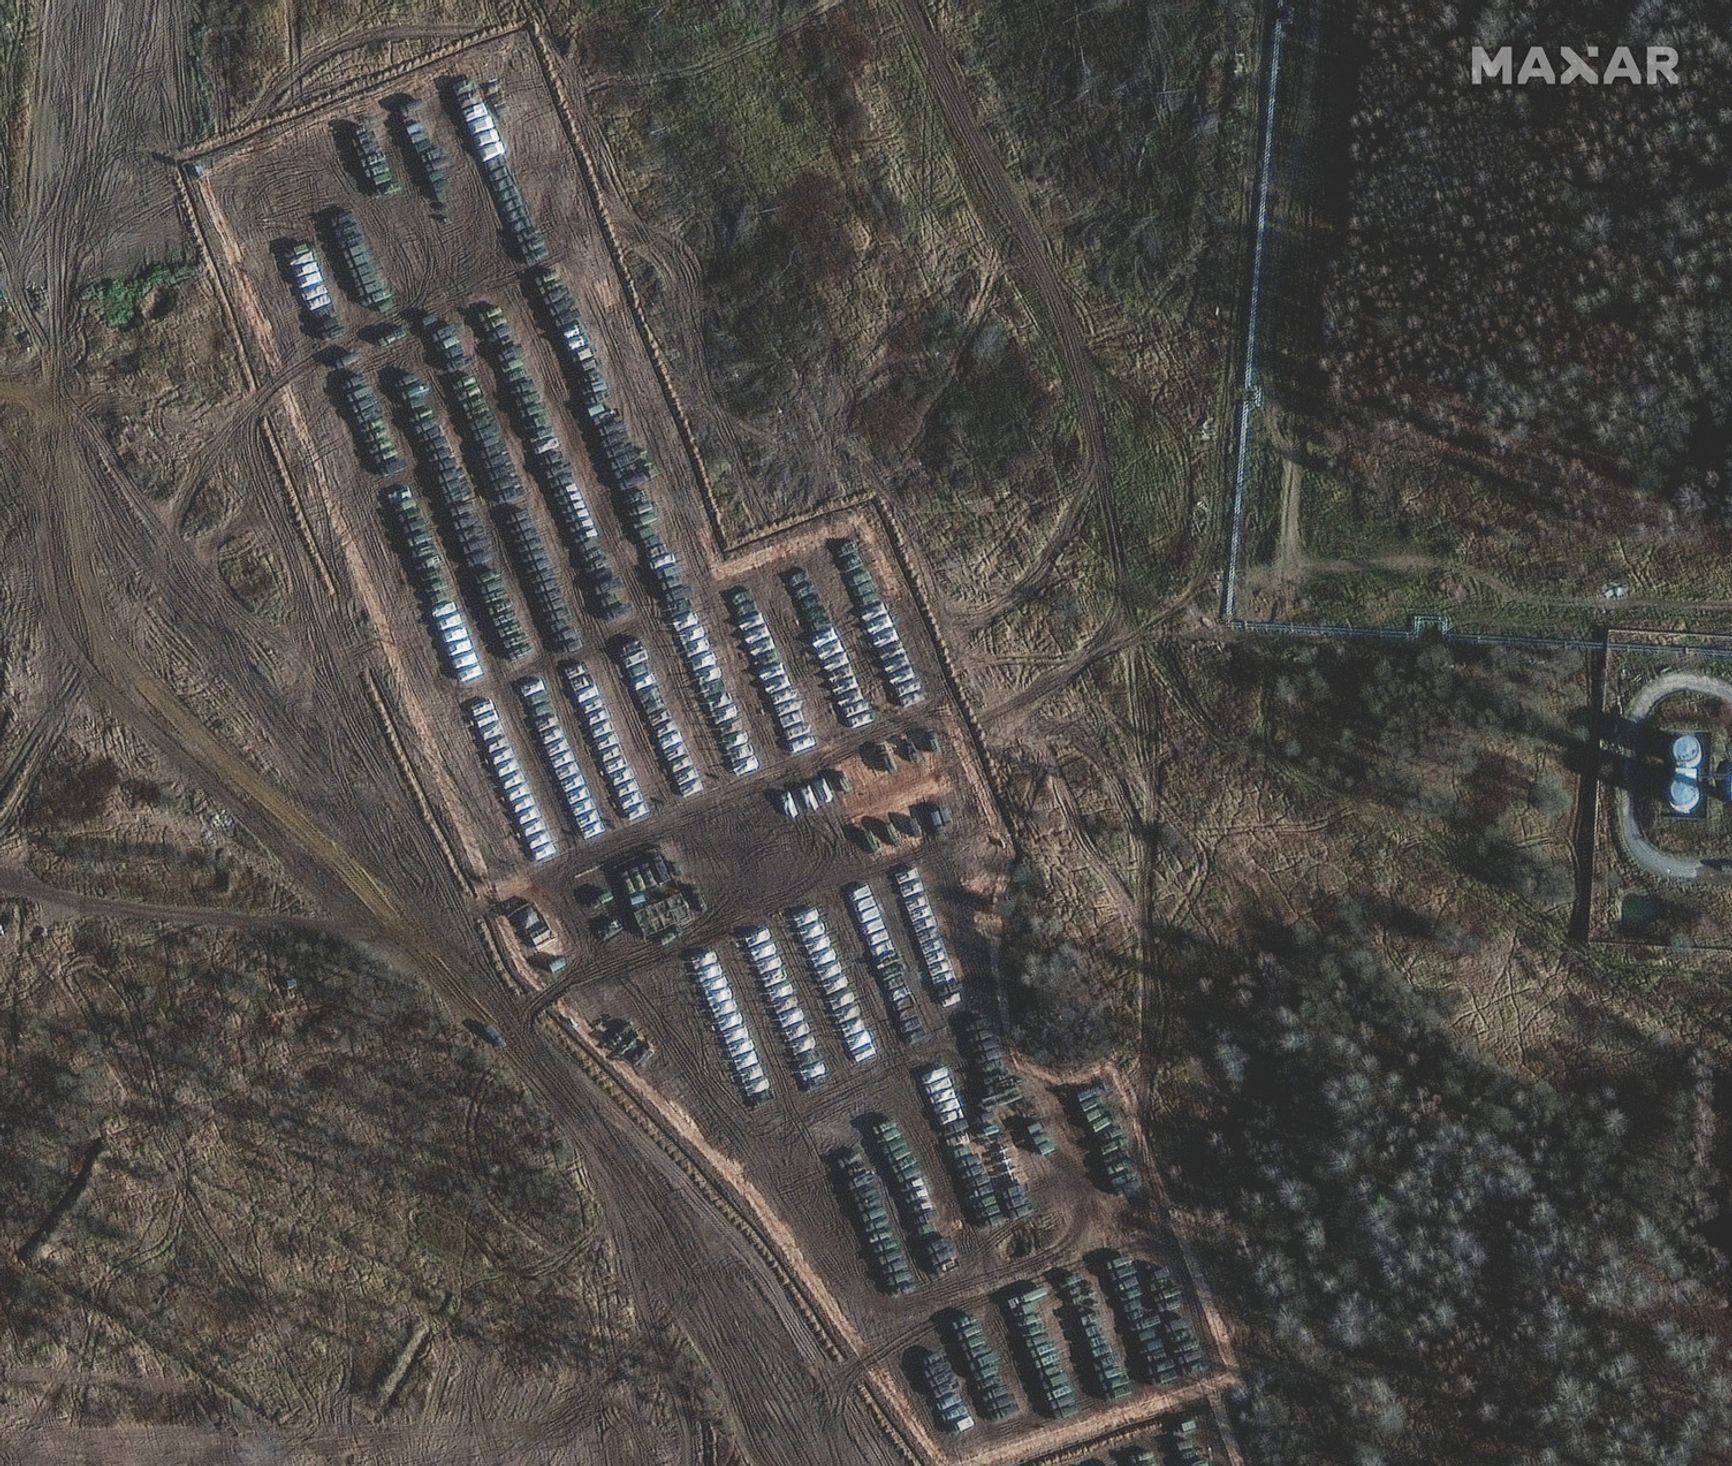 Снимки российской военной техники у границ Украины со спутников Maxar